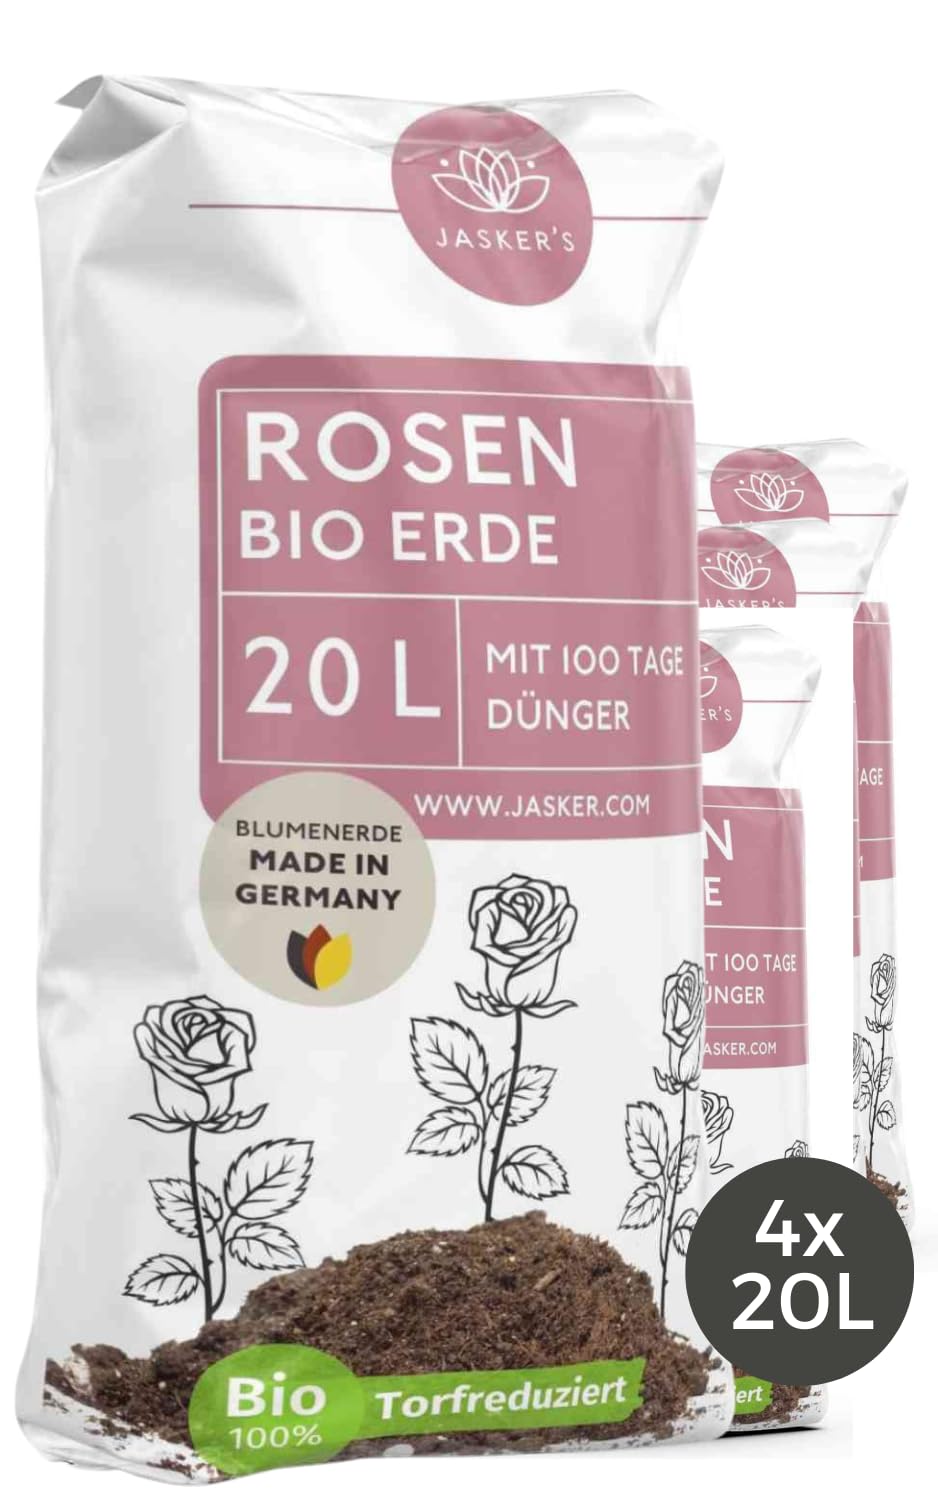 Bio Rosenerde 80 L (4x20L) - Blumenerde für Rosen aus 40% weniger Torf - Pflanzerde Rosen - Rosenerde für Kübel mit Dünger - Erde für Pflanzen - Rosen Anzucht Erde - Erde für Rosen - Rosen Erde